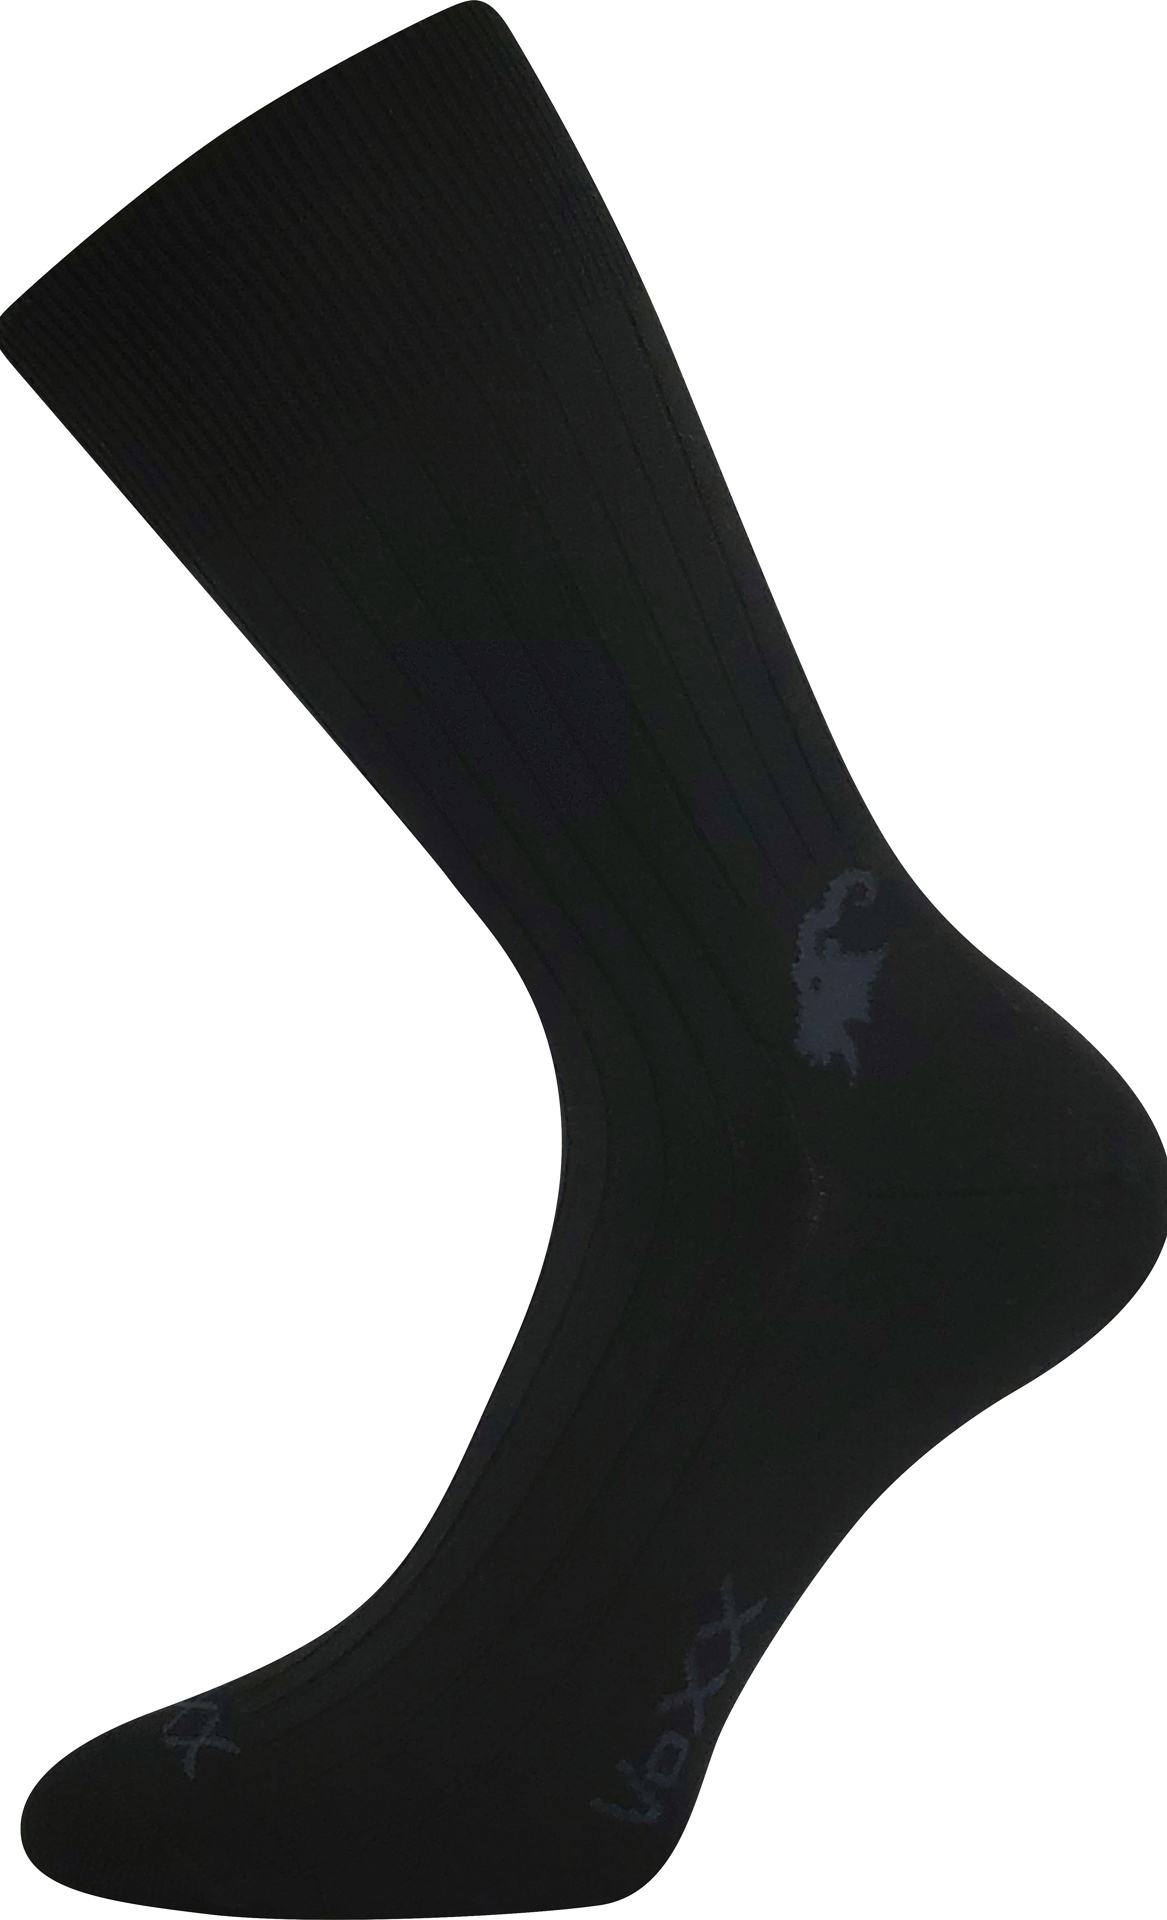 VOXX® ponožky Cashmere love černá 3 pár 35-38 120977